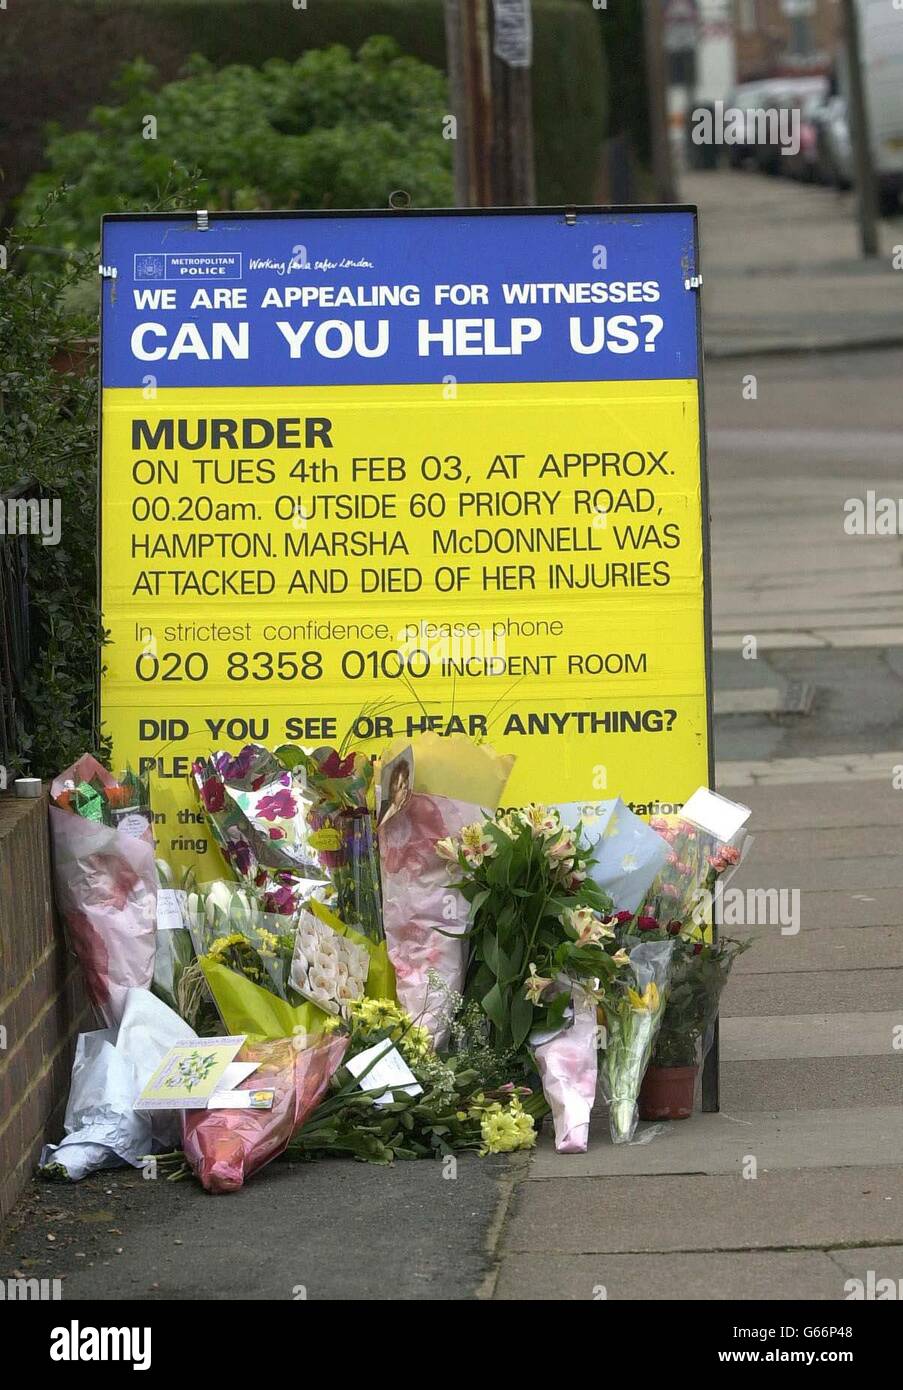 Hommages floraux, près de la scène du meurtre de l'adolescente Marsha McDonnell, qui a été tuée à quelques mètres de son Priory Rd, Hampton, maison. Banque D'Images